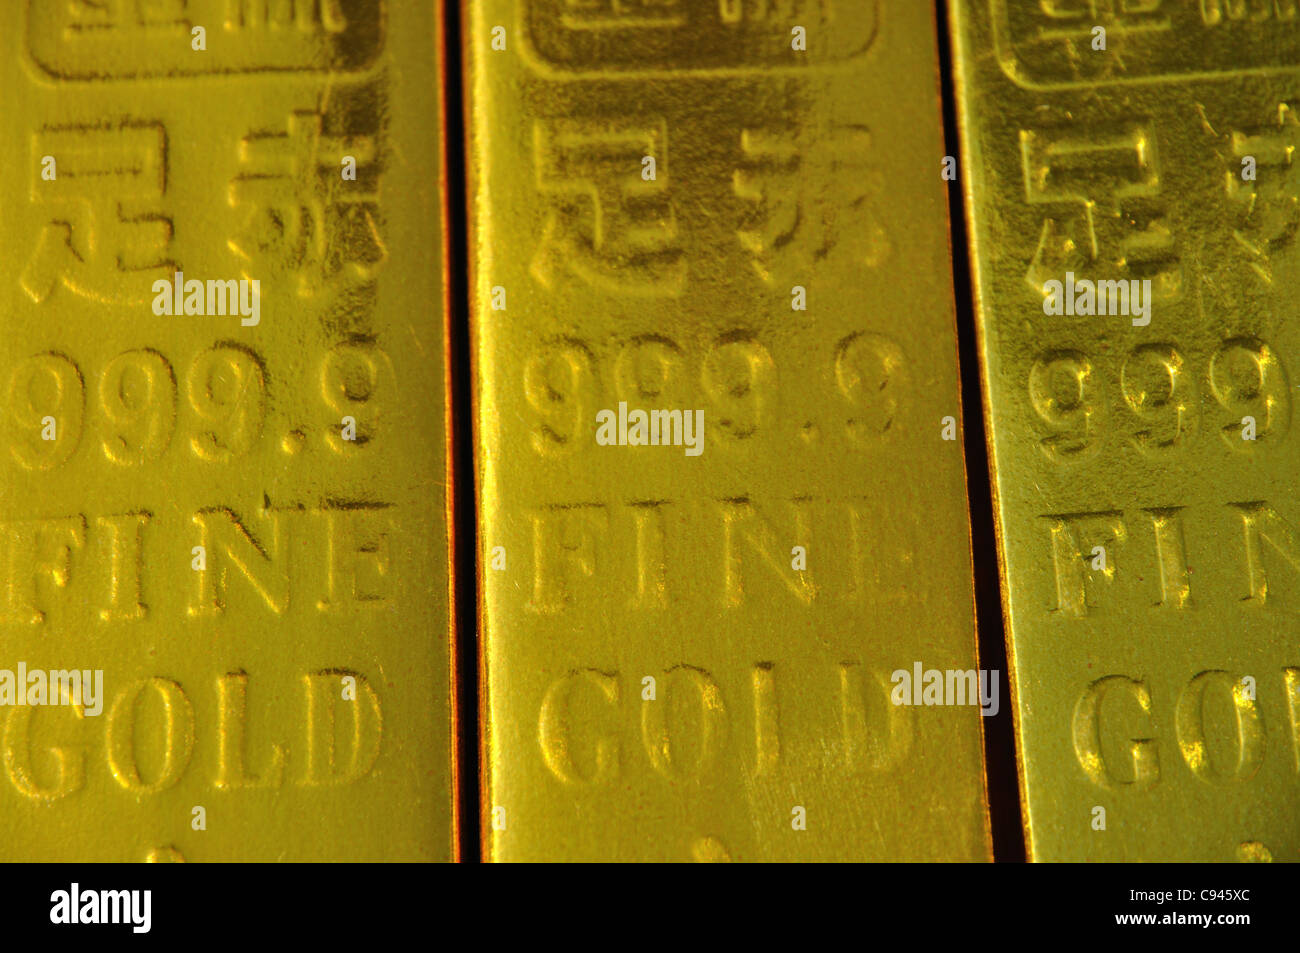 Offerte di riproduzione Gold bullion per ricordare i morti, Dalian, Liaoning, Cina. Foto Stock